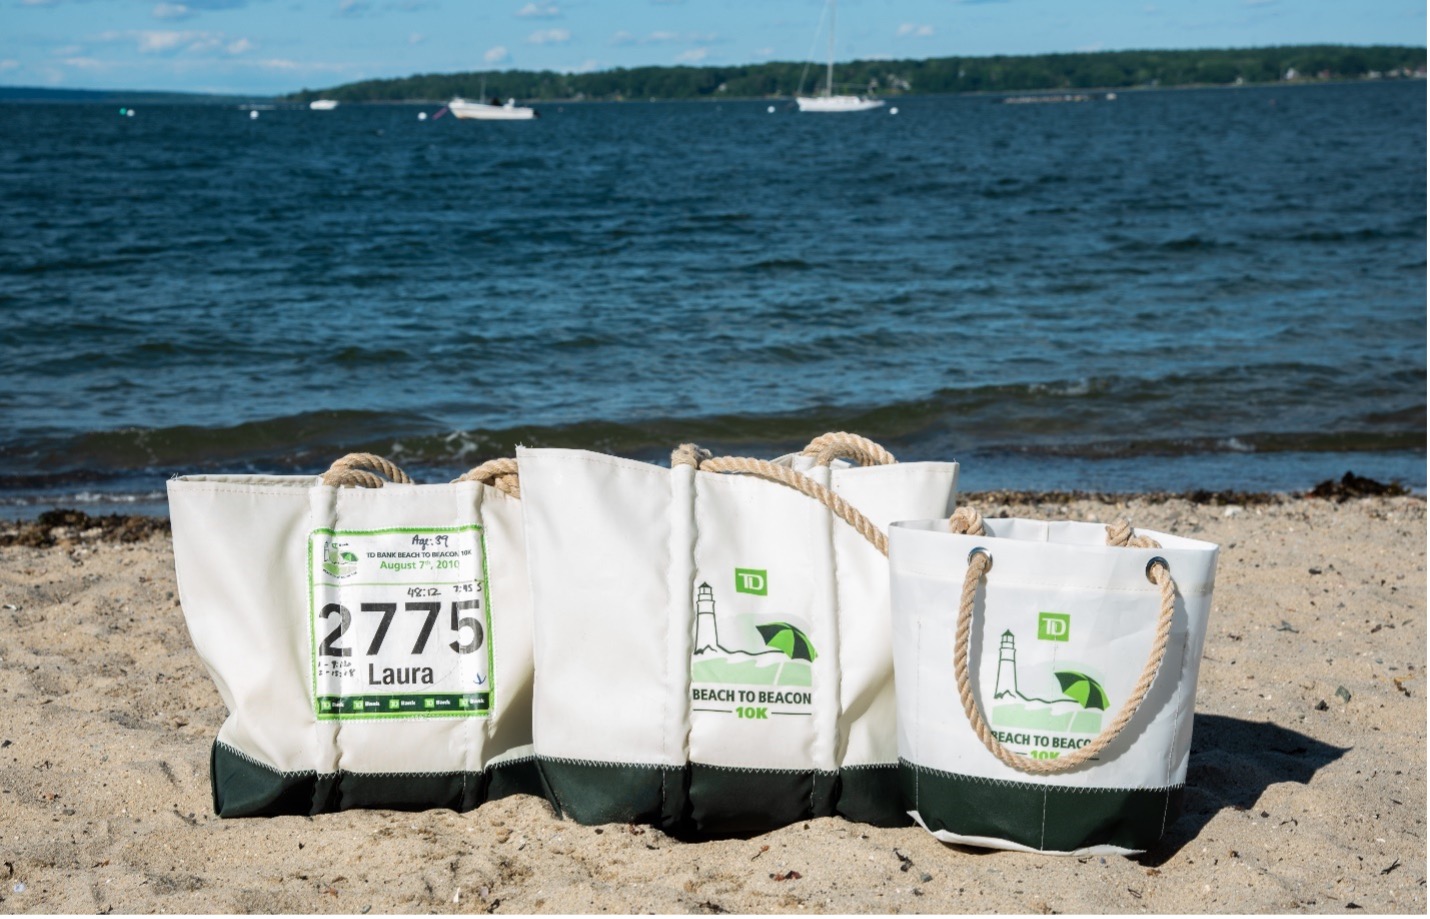 TD Beach to Beacon Sea Bags Collection